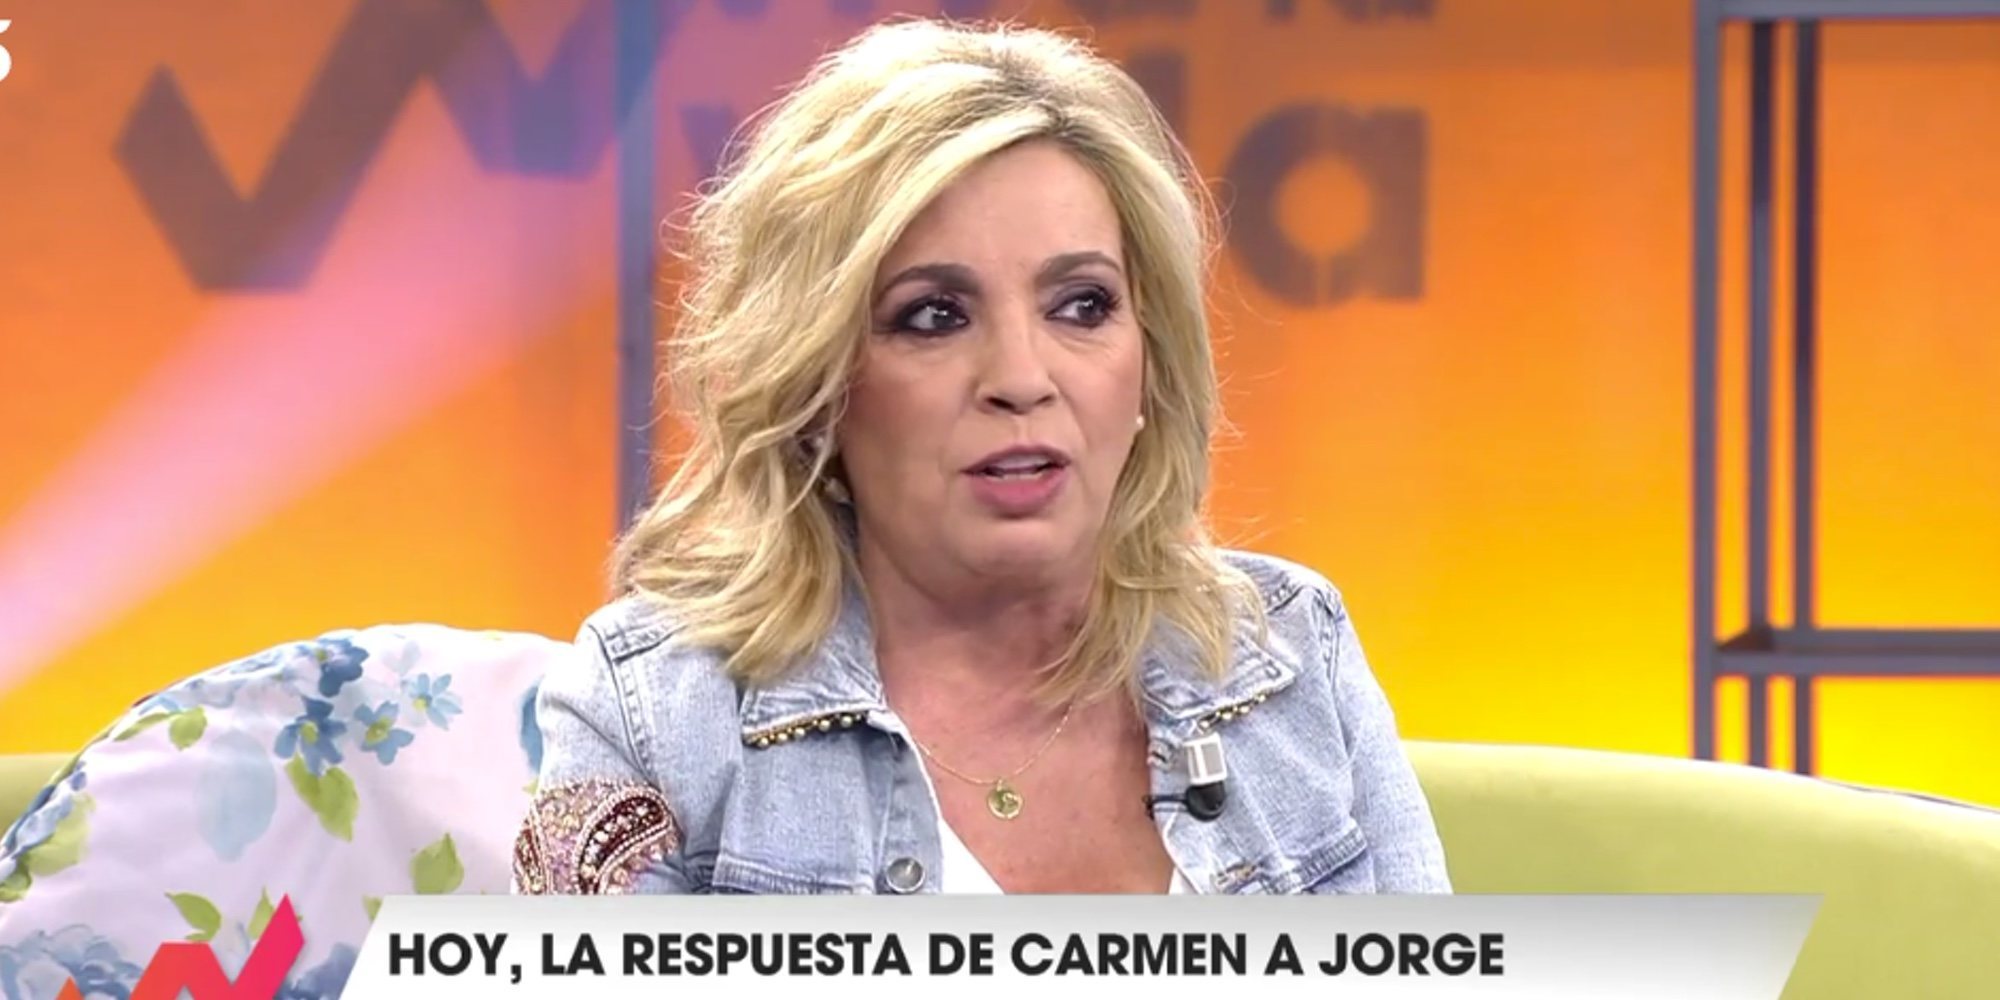 Carmen Borrego responde a la duras palabras de Jorge Javier Vázquez en el 'Deluxe': "Se me saltaron las lágrimas"